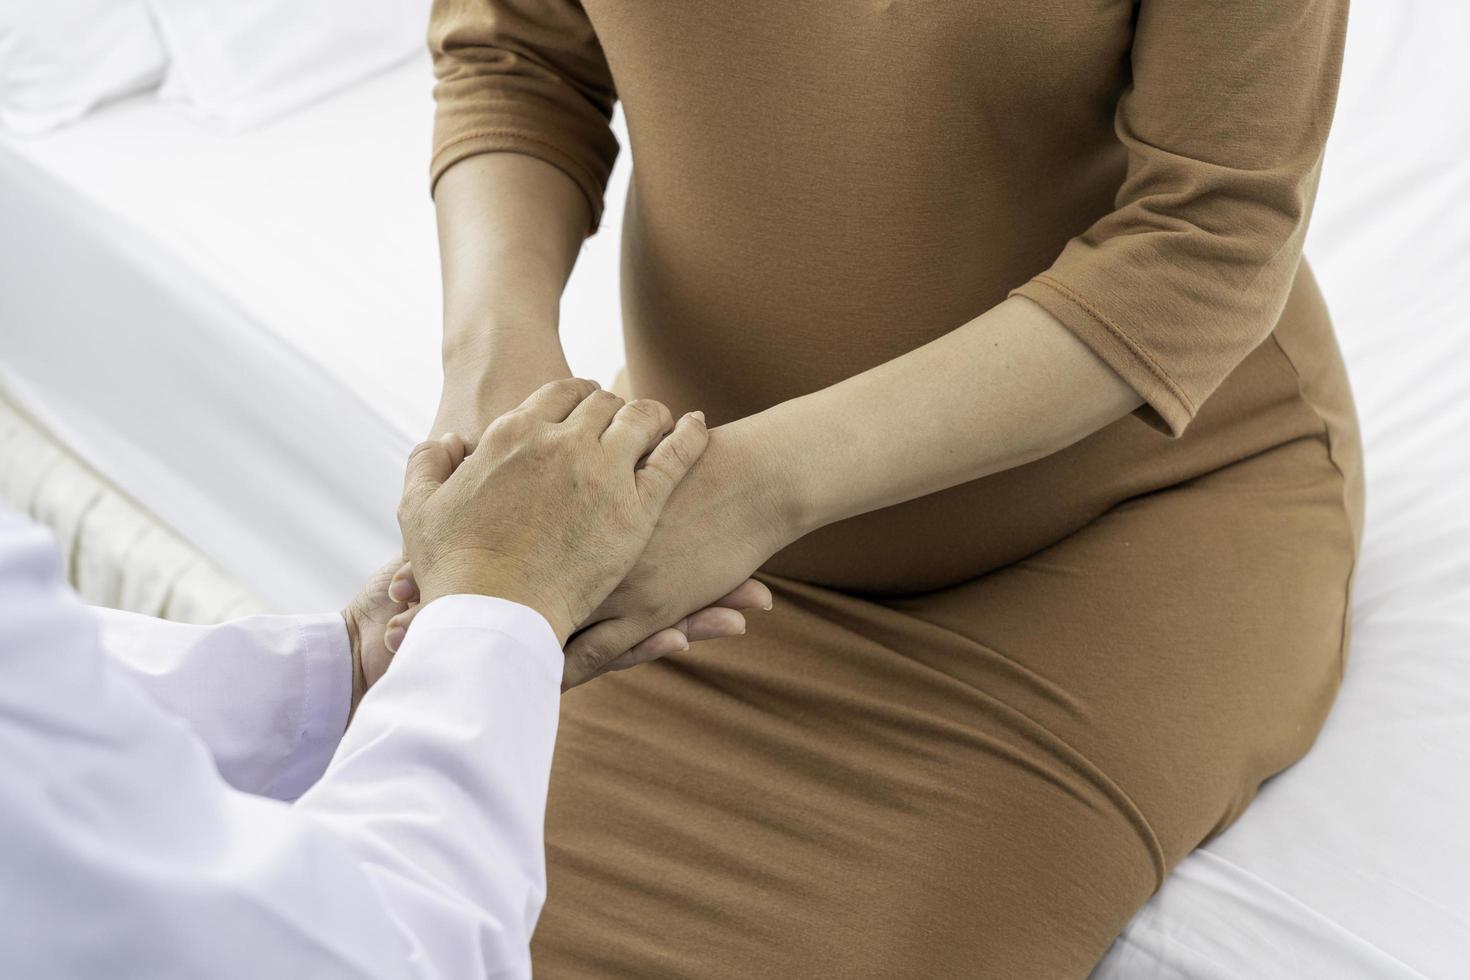 verloskundige houdt handen van zwangere patiënt foto